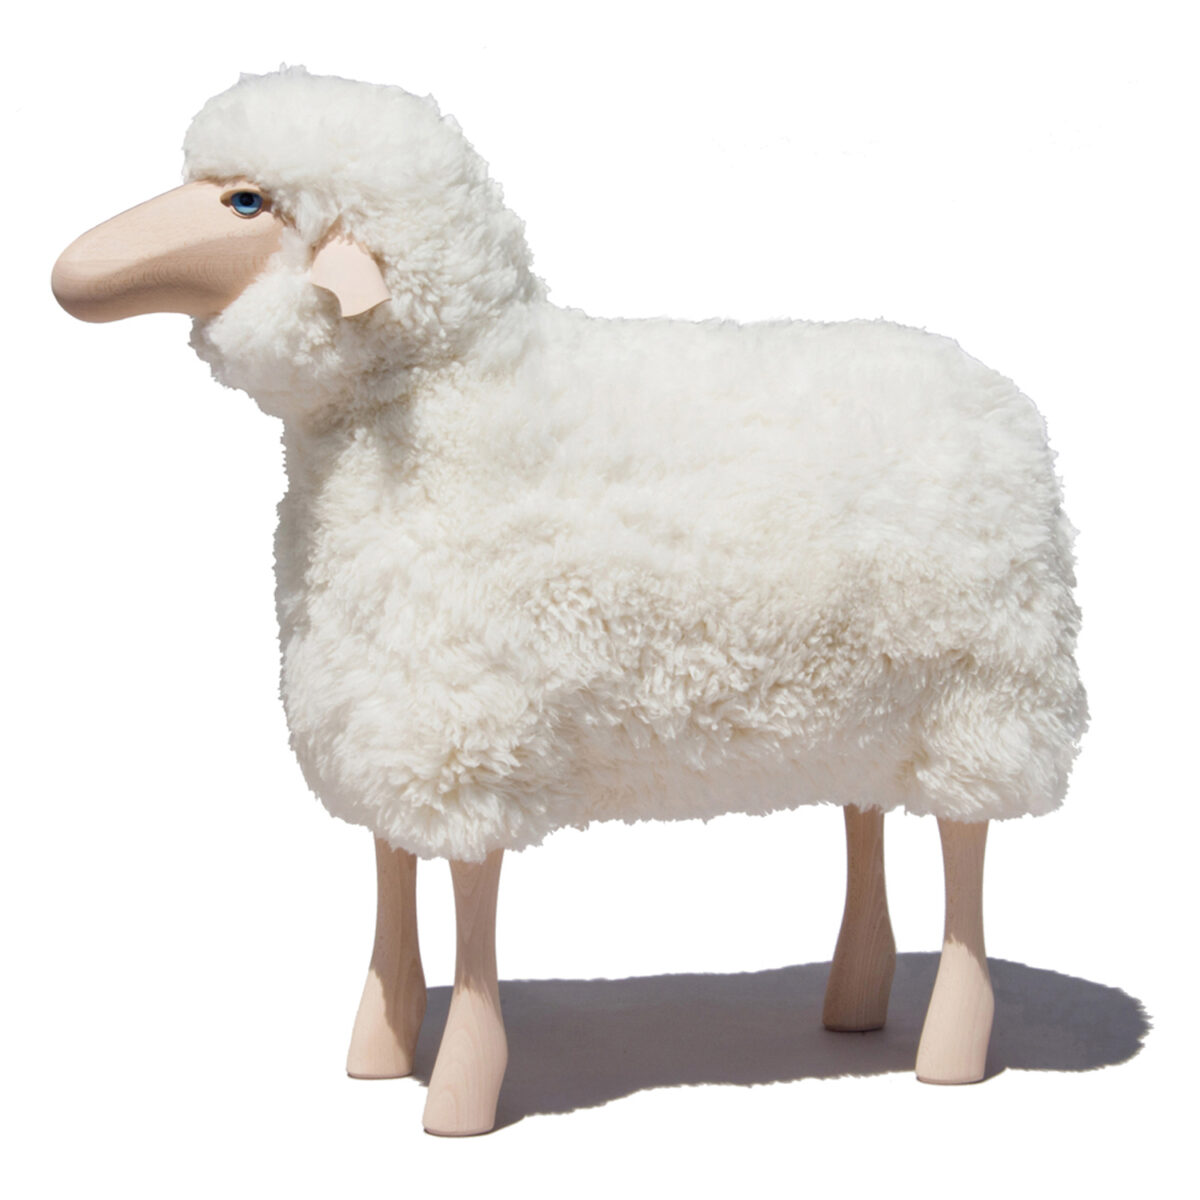 Schaf in Lebensgröße in Buchenholz, weißes Fell